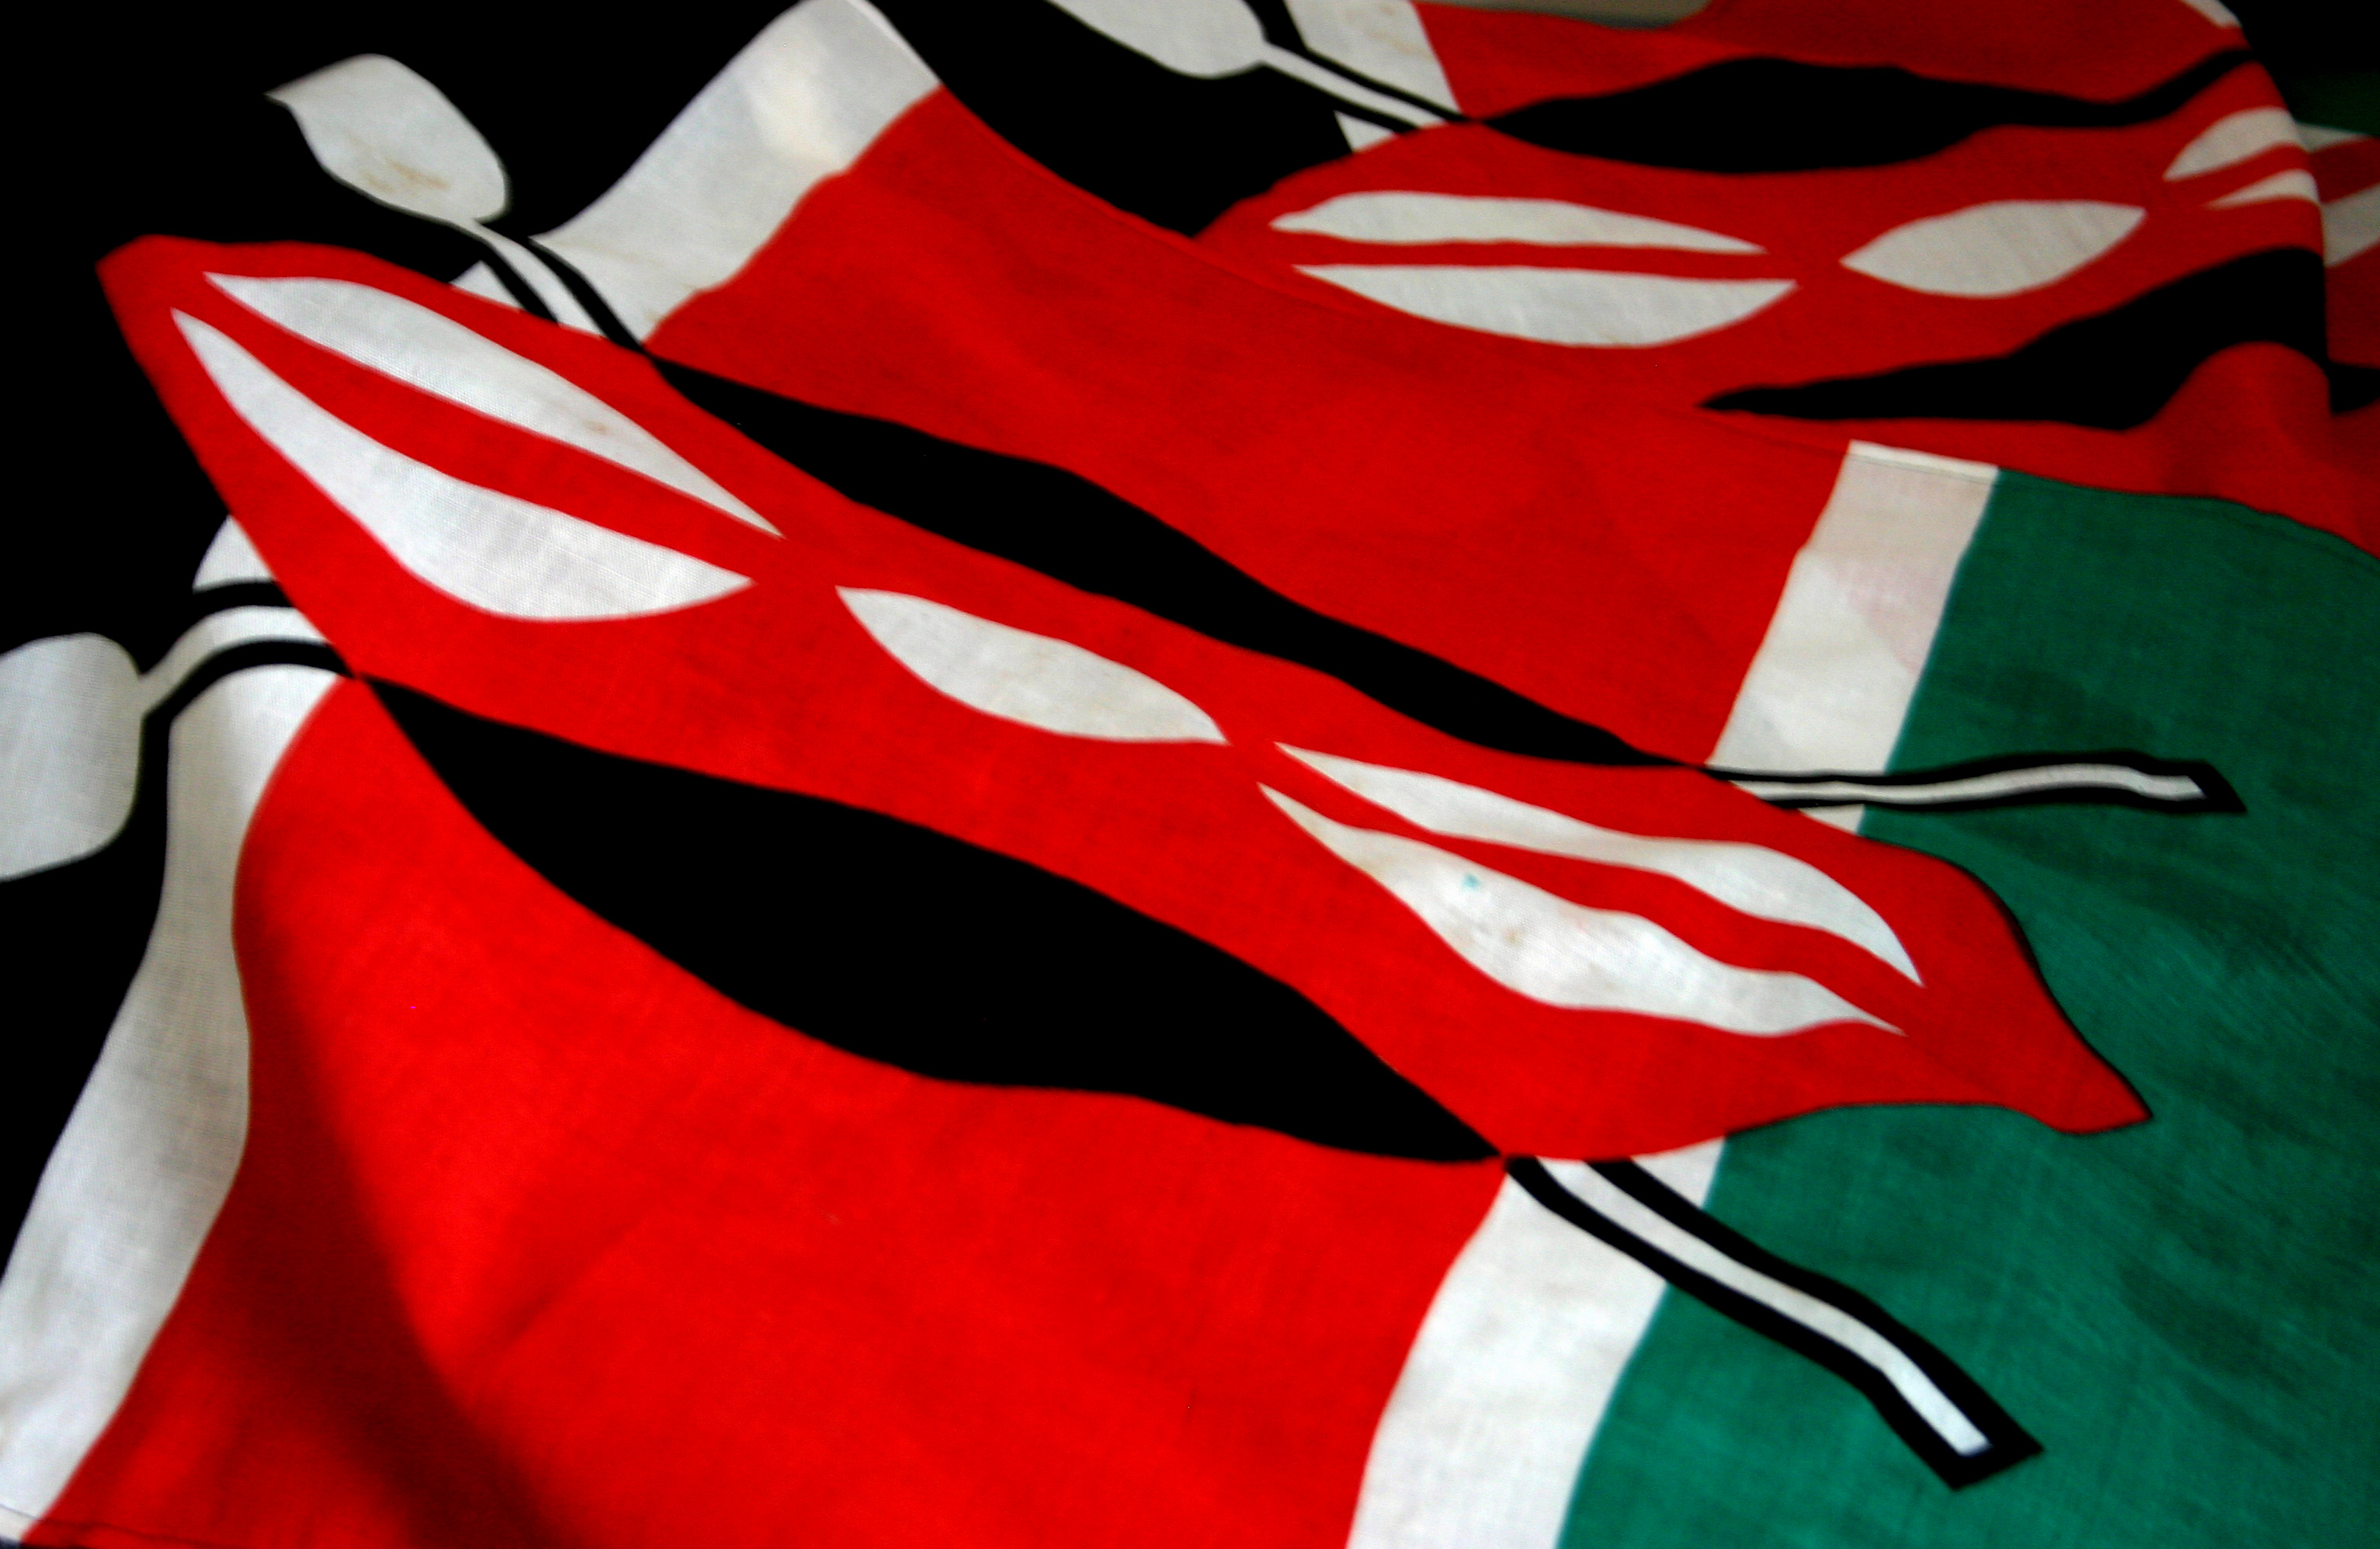 flag kenya